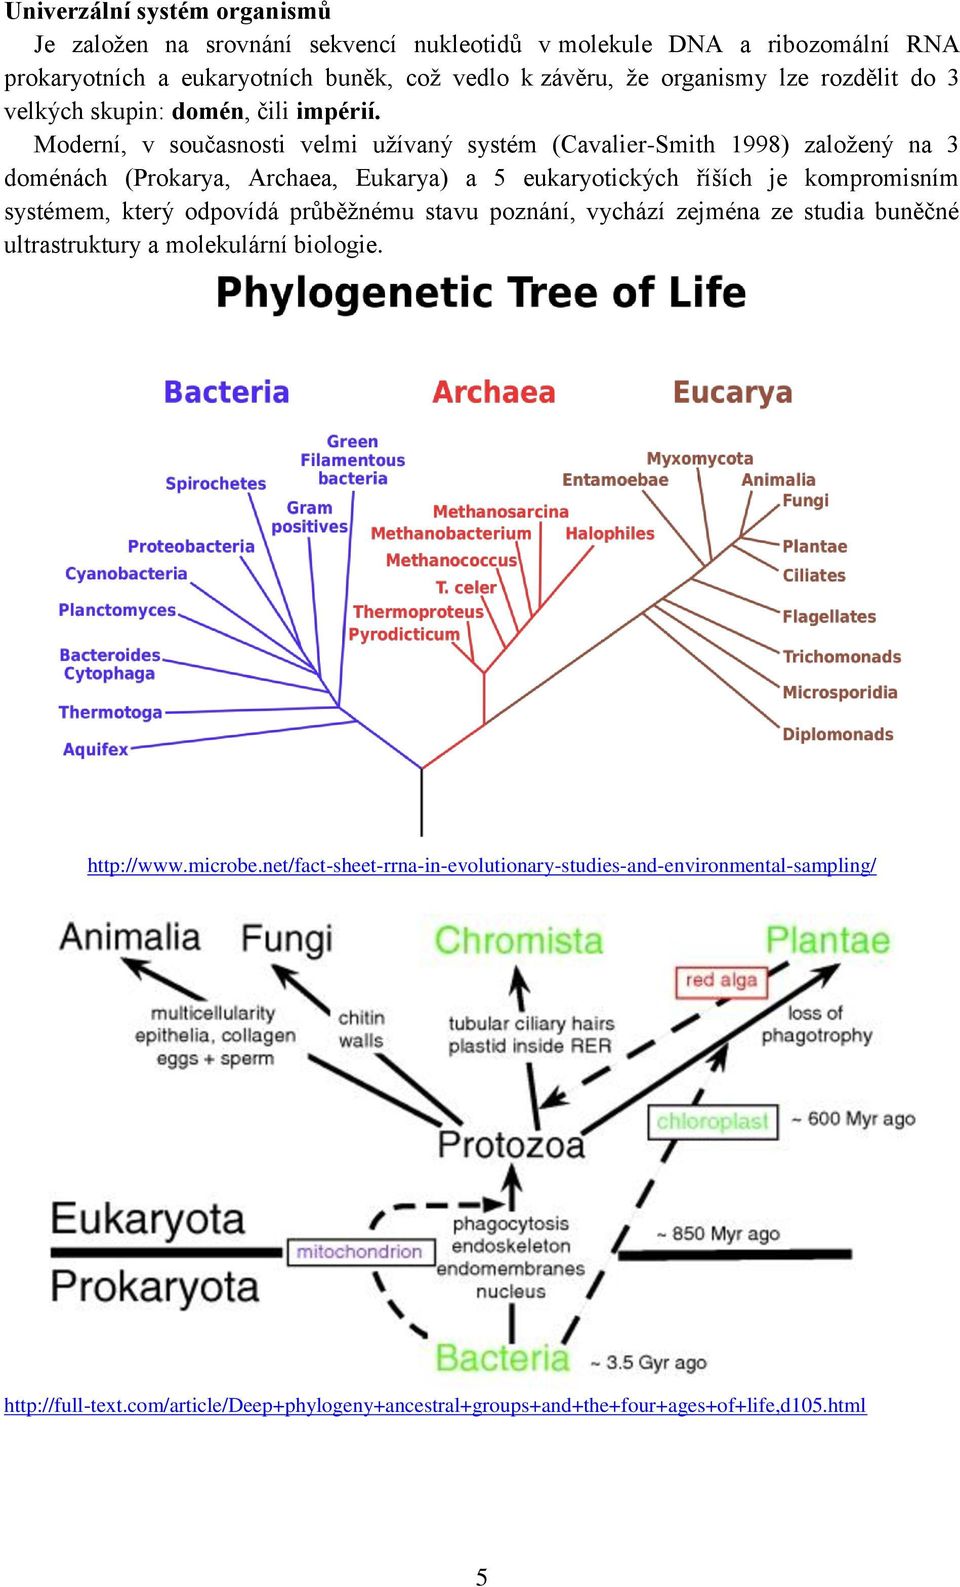 Moderní, v současnosti velmi užívaný systém (Cavalier-Smith 1998) založený na 3 doménách (Prokarya, Archaea, Eukarya) a 5 eukaryotických říších je kompromisním systémem, který